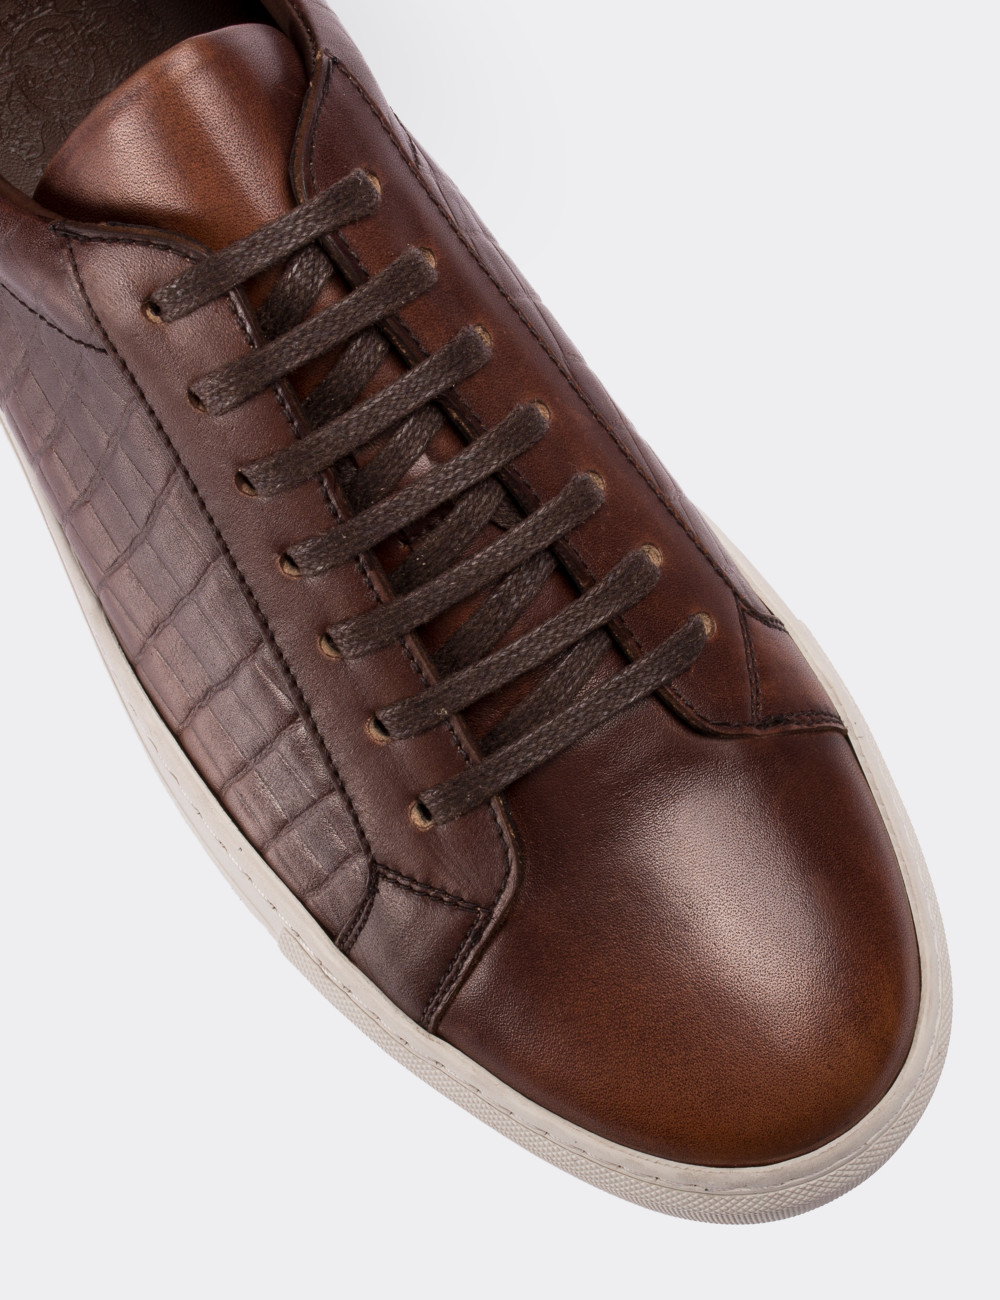 Tan  Leather  Sneakers - 01681MTBAC01